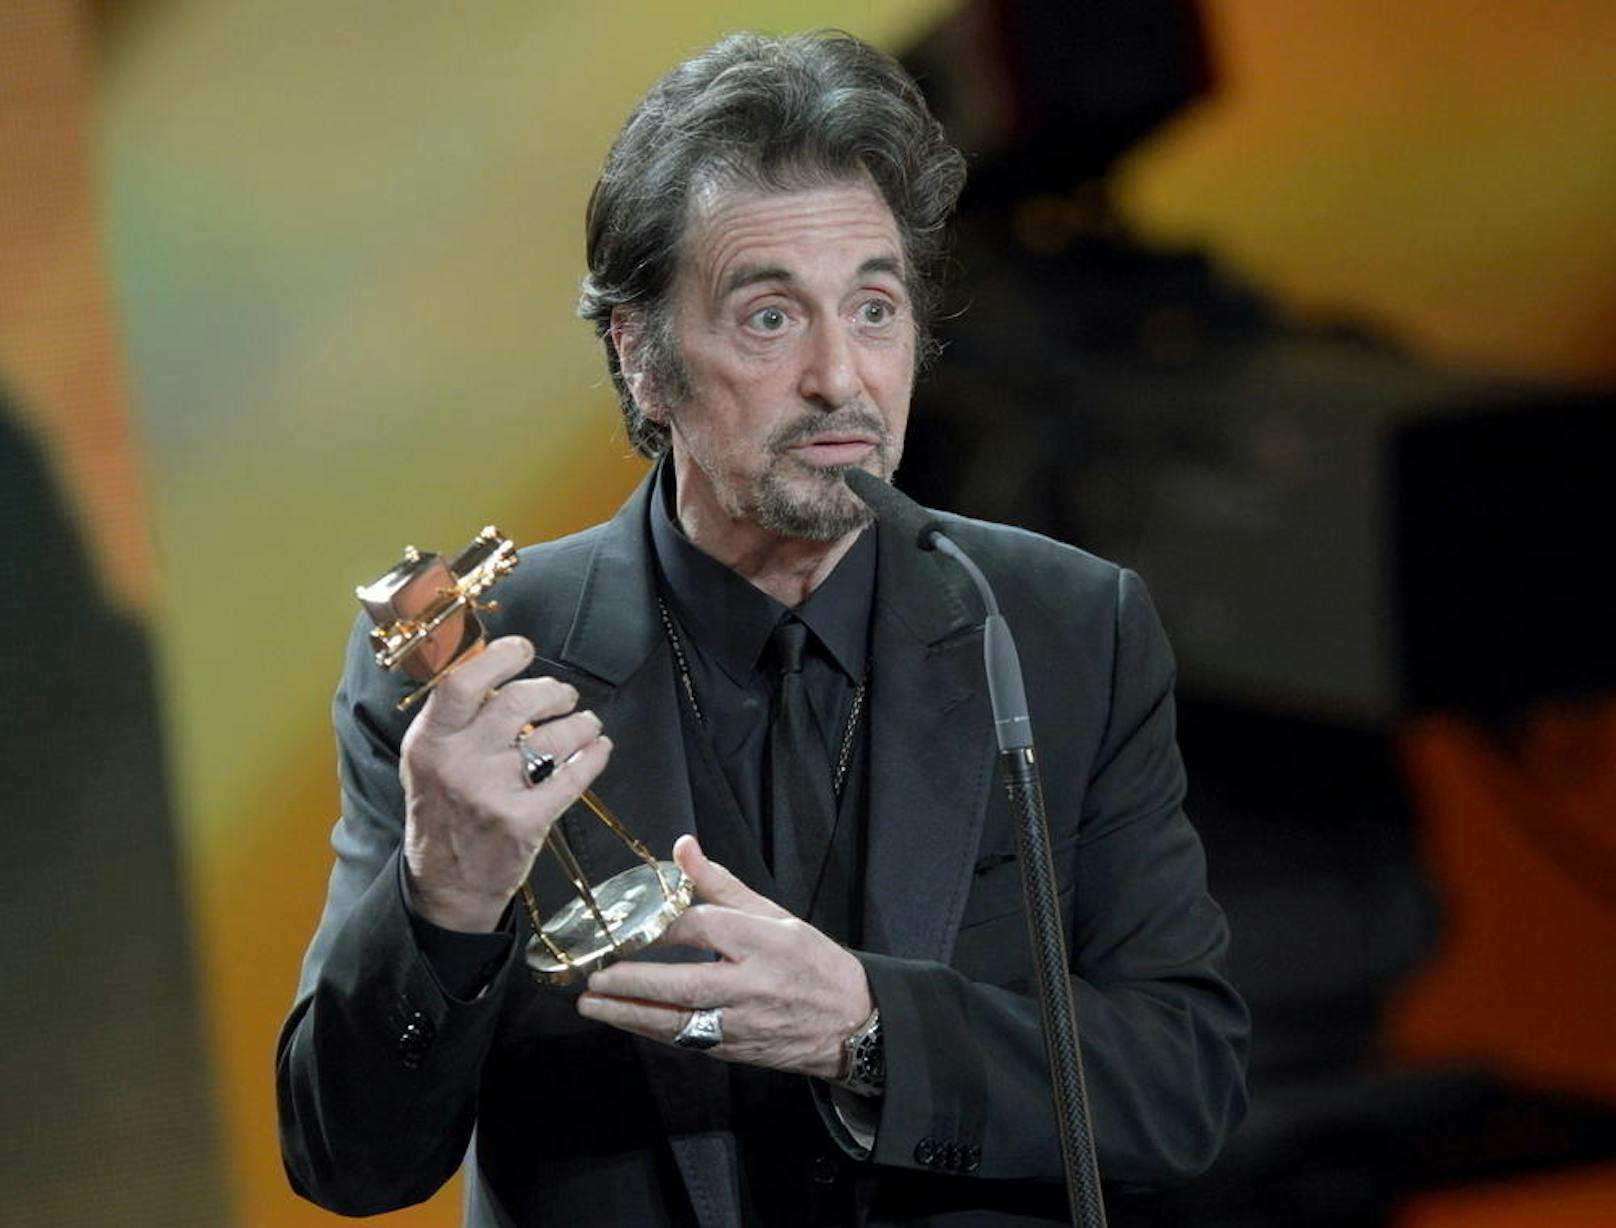 Eine wahre Hollywood-Größe: Al Pacino misst 170 Zentimeter